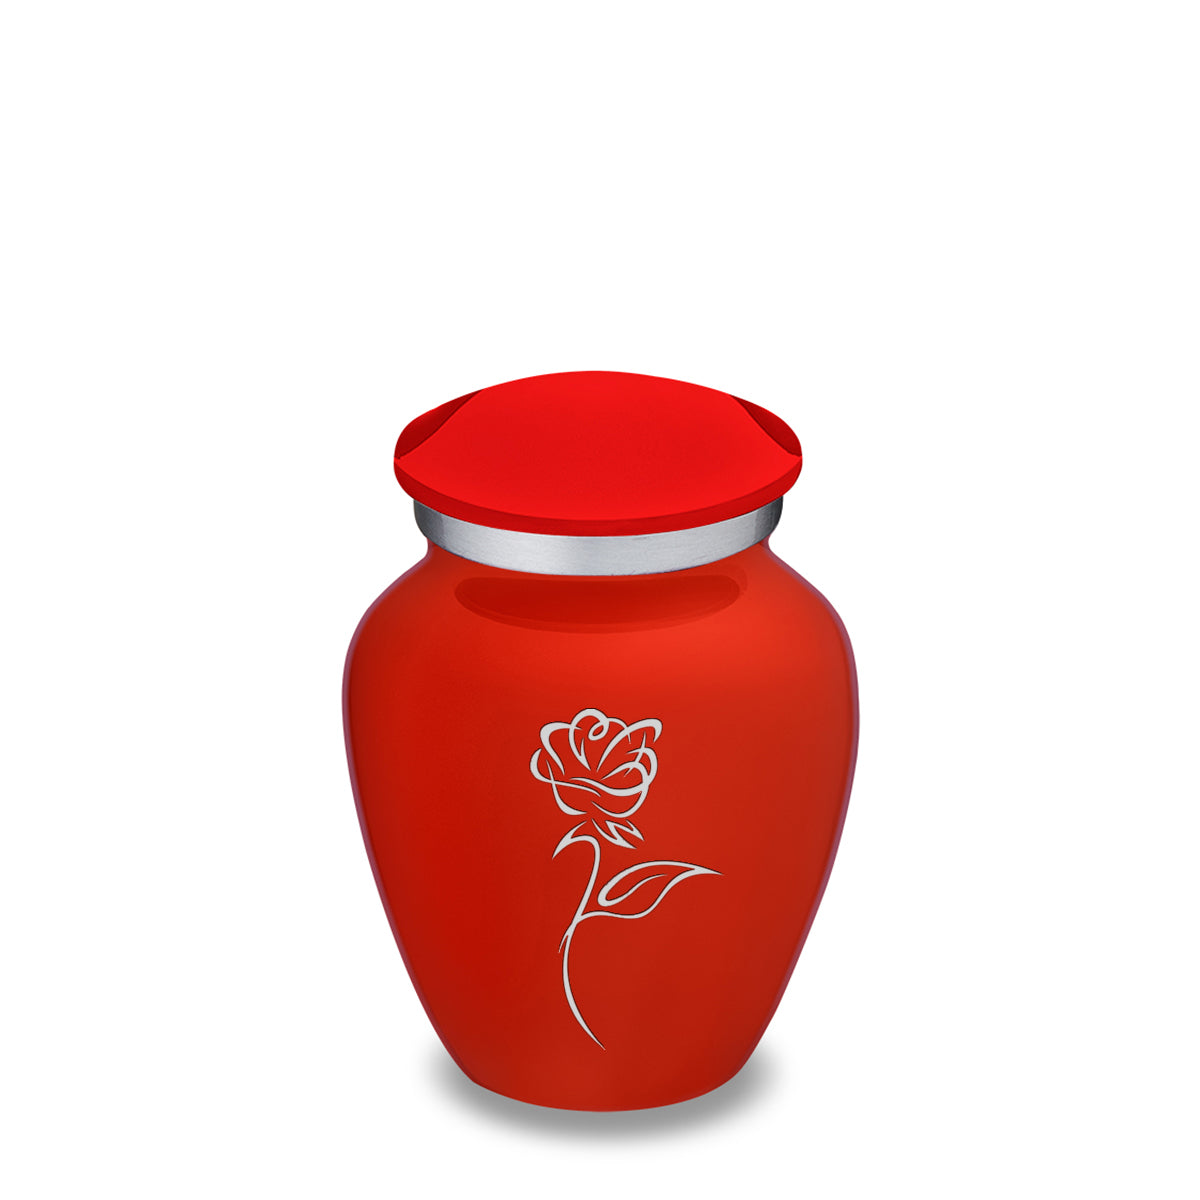 Keepsake Embrace Bright Red Rose Cremation Urn